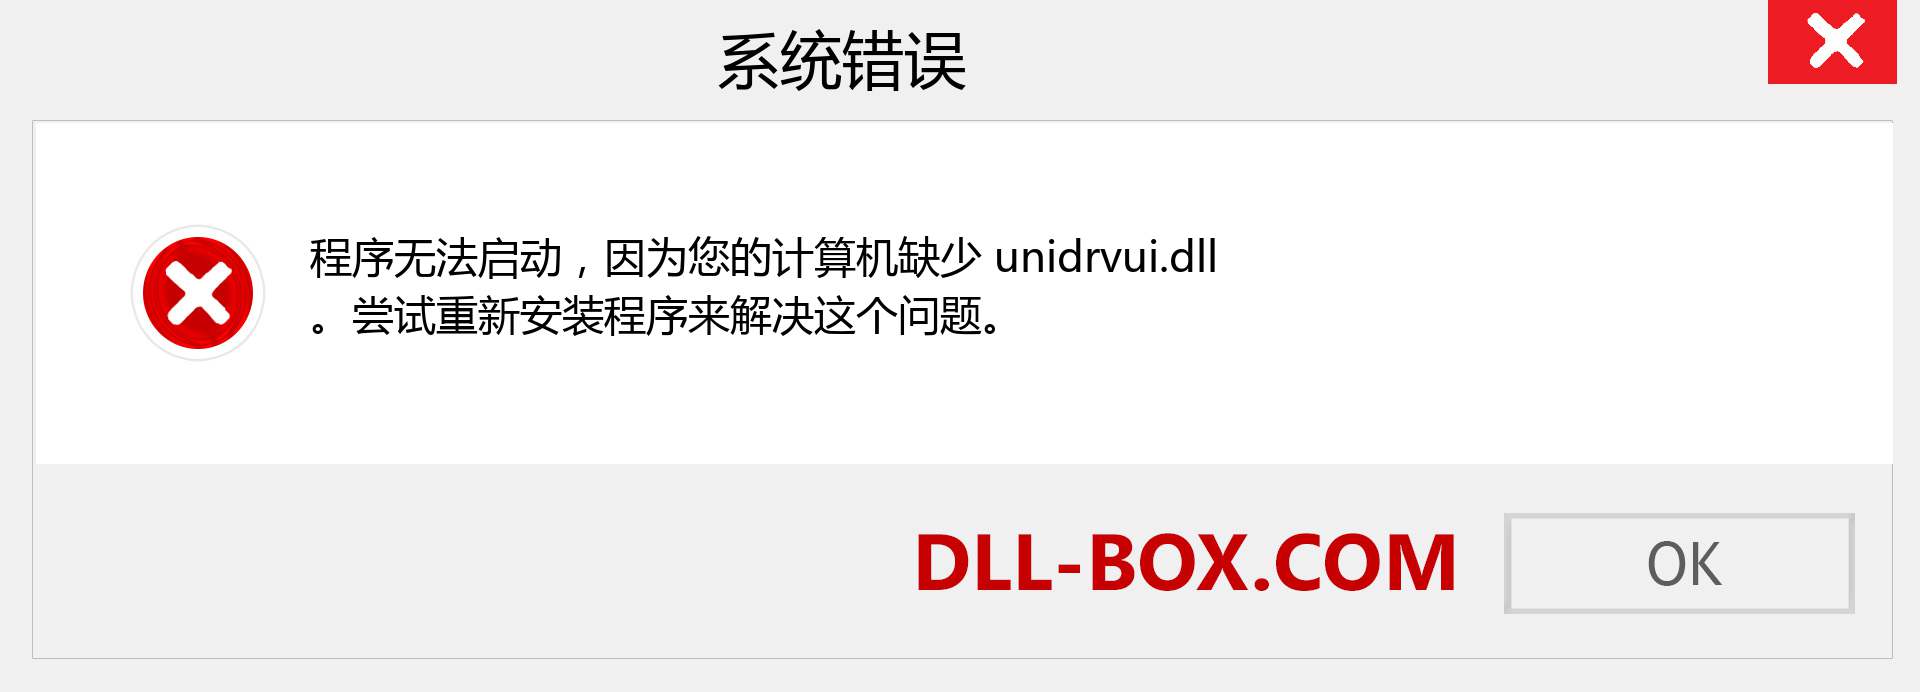 unidrvui.dll 文件丢失？。 适用于 Windows 7、8、10 的下载 - 修复 Windows、照片、图像上的 unidrvui dll 丢失错误